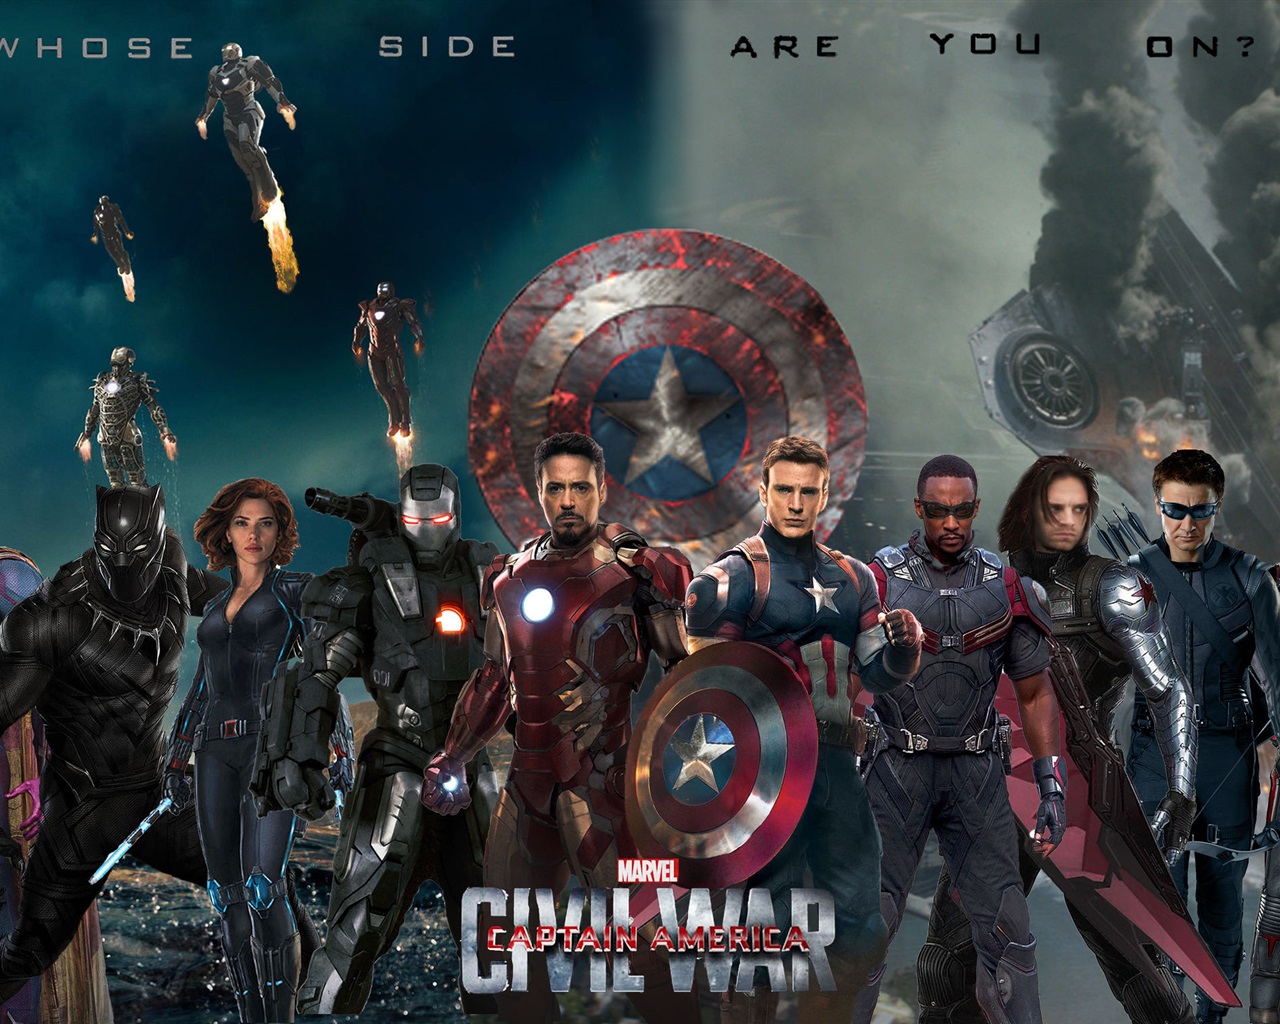 marvel civil war wallpaper,juego de acción y aventura,película,superhéroe,personaje de ficción,capitan america